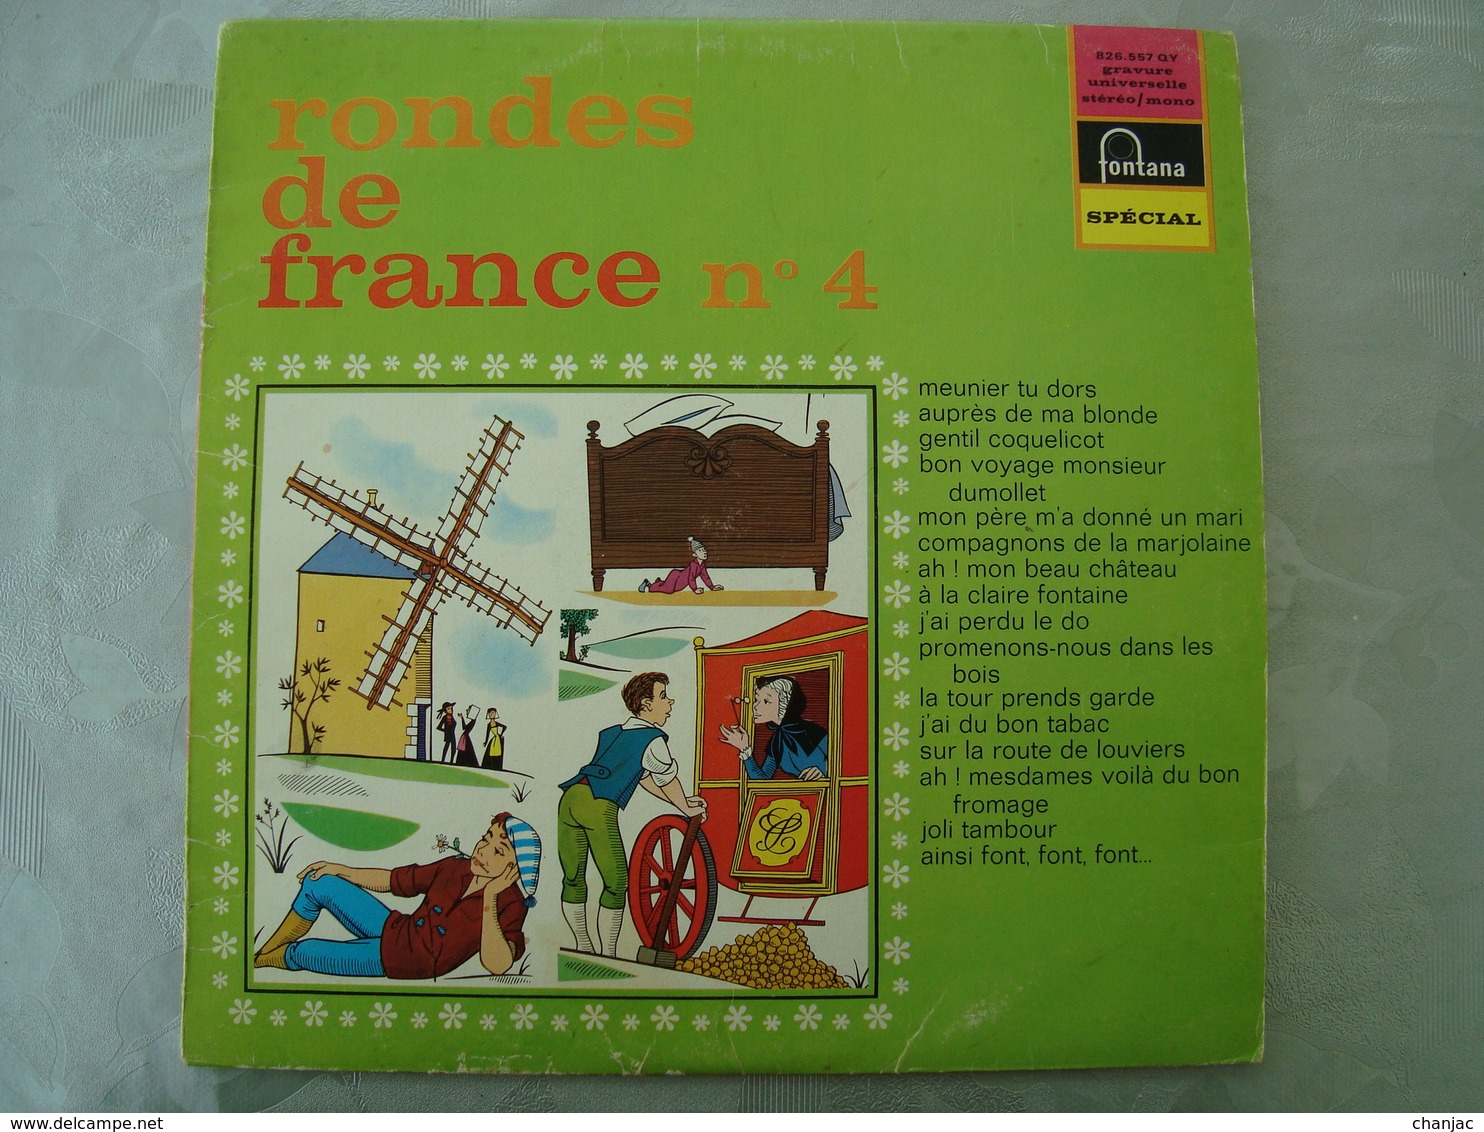 33 Tours: RONDES DE FRANCE N° 4 Meunier Tu Dors - Fontana 826.557 QY - Maitrise De L'O.R.T.F - Children